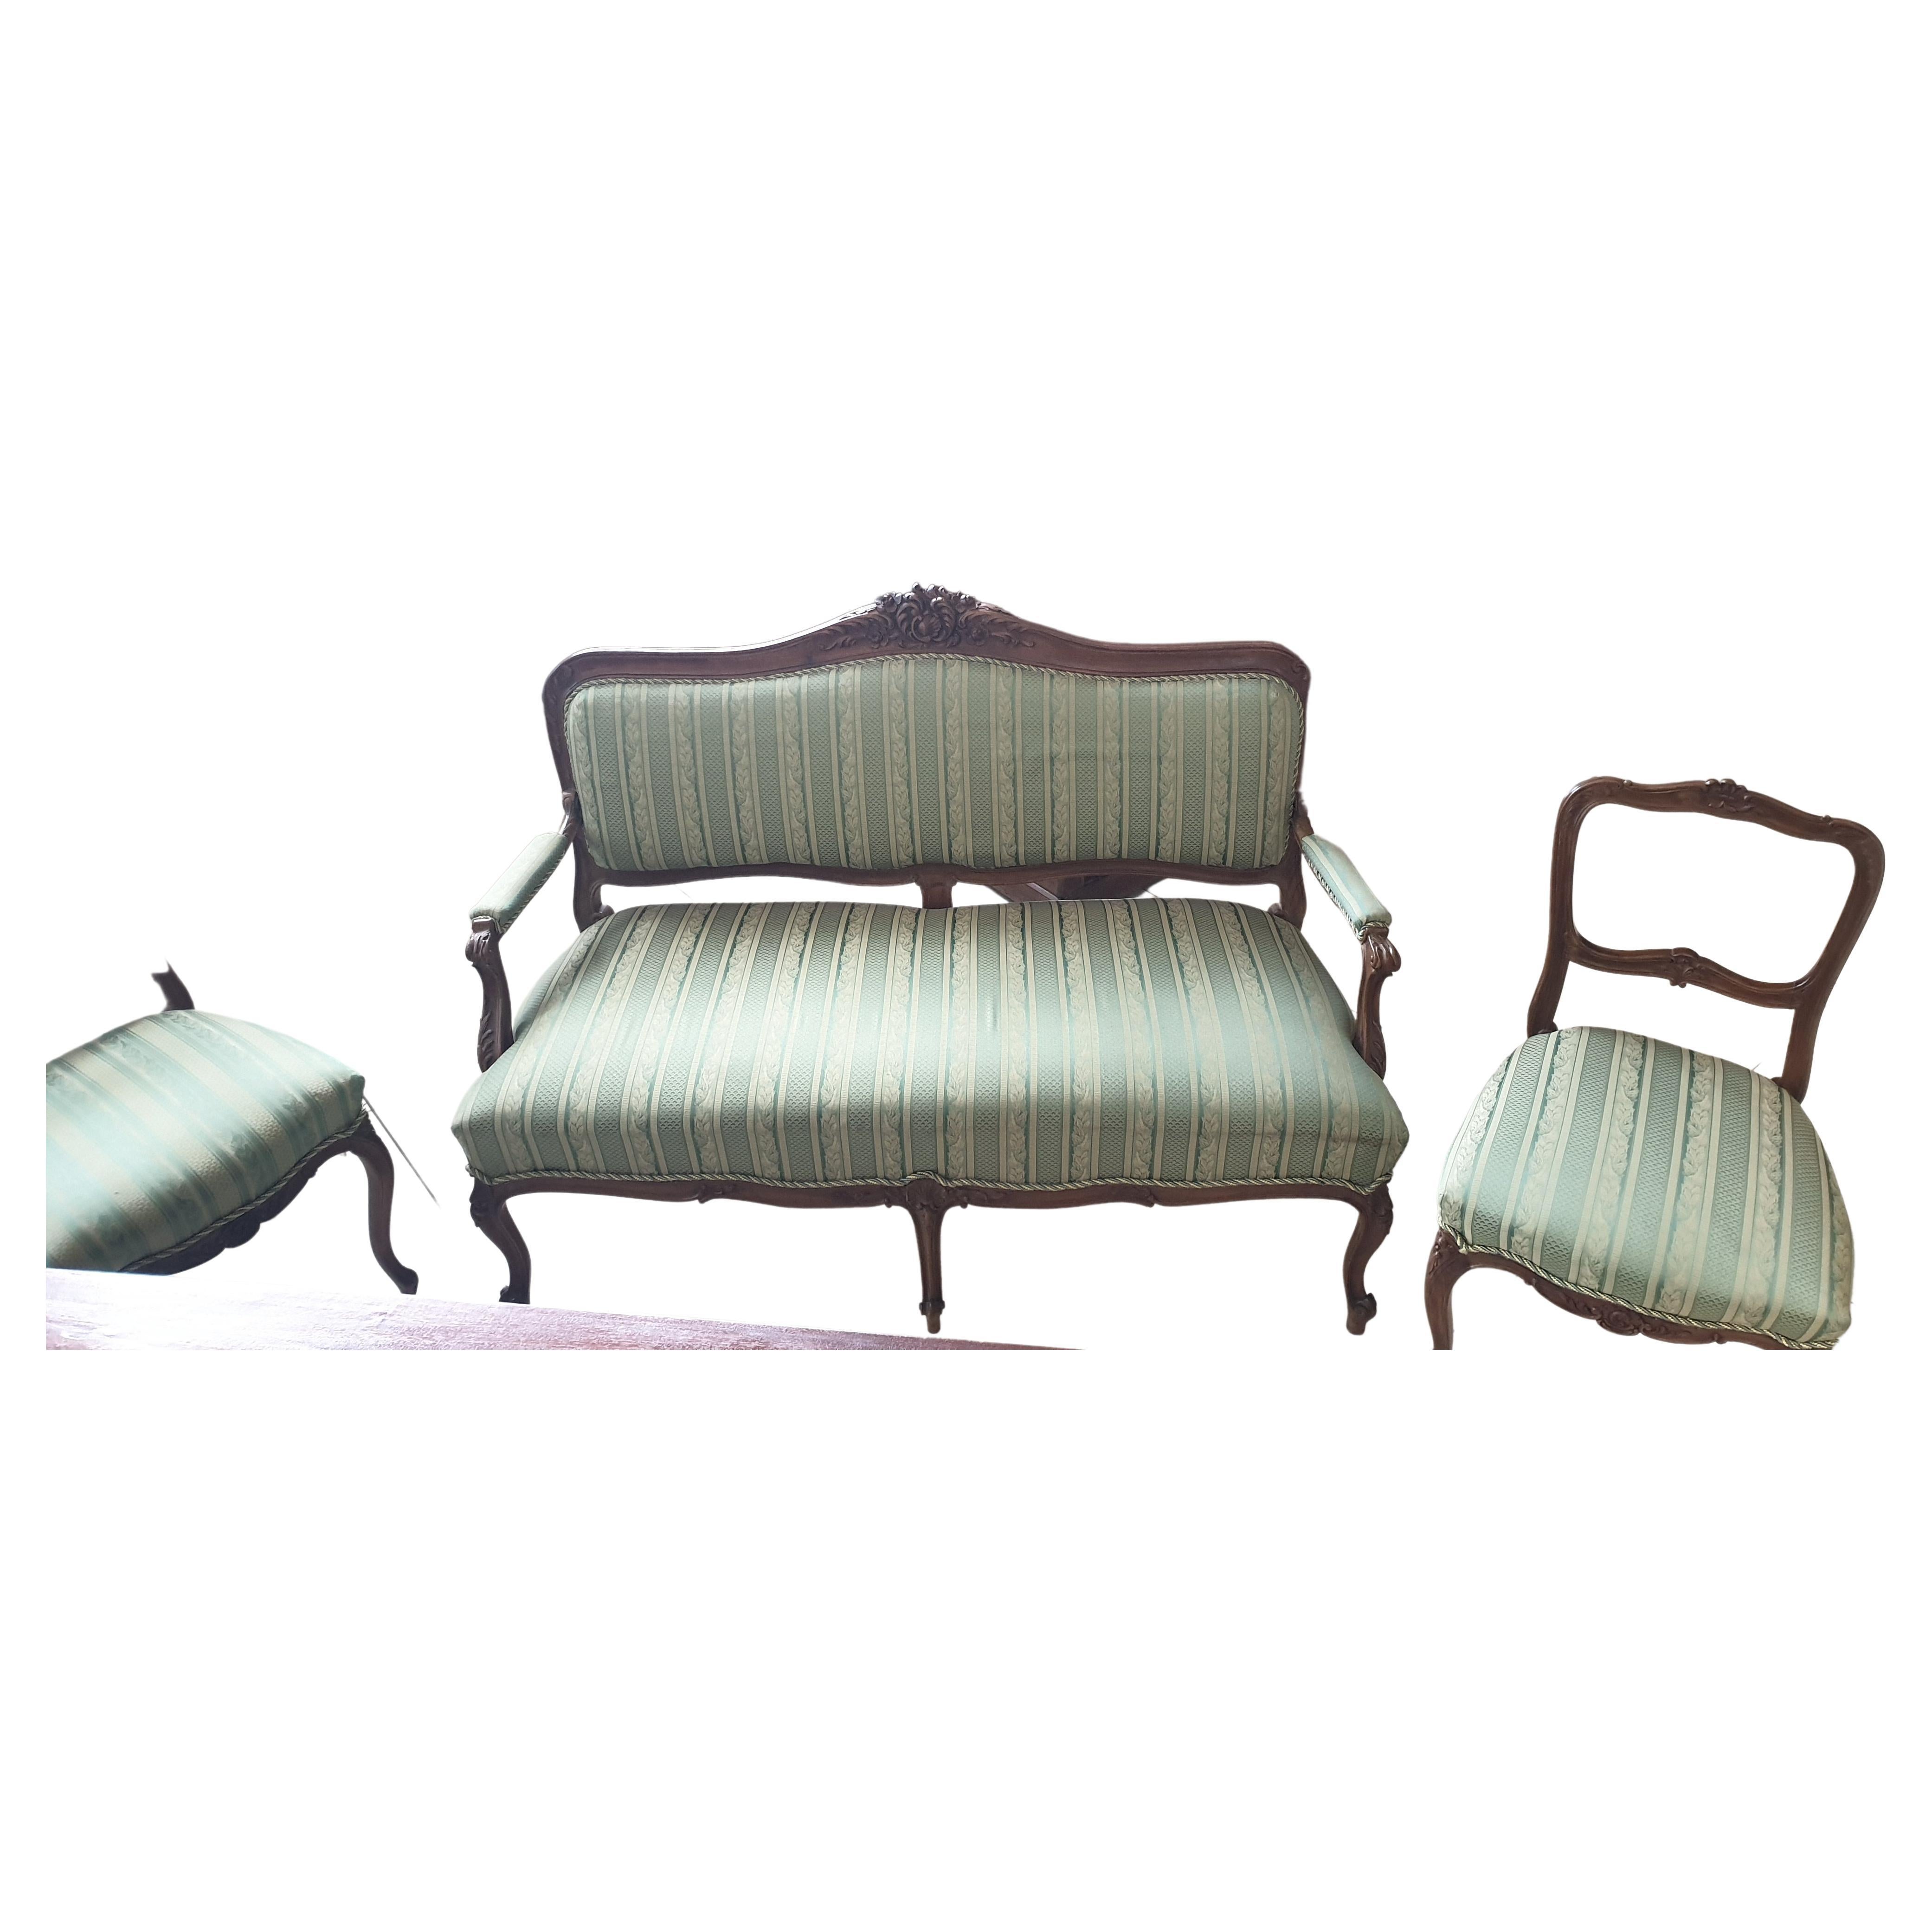 Bemutatjuk Önnek ezt a különleges szalon garnitúra ( 1 db. 2 személyes sofa + 2 székek ) , neo barokk  stílusban.
A bemutatott darab korának megfelelő  állapotban van. 
Az textil anyag tiszta, rögtön használható a bútorok.

Magasság: 46 (ülés ), 97